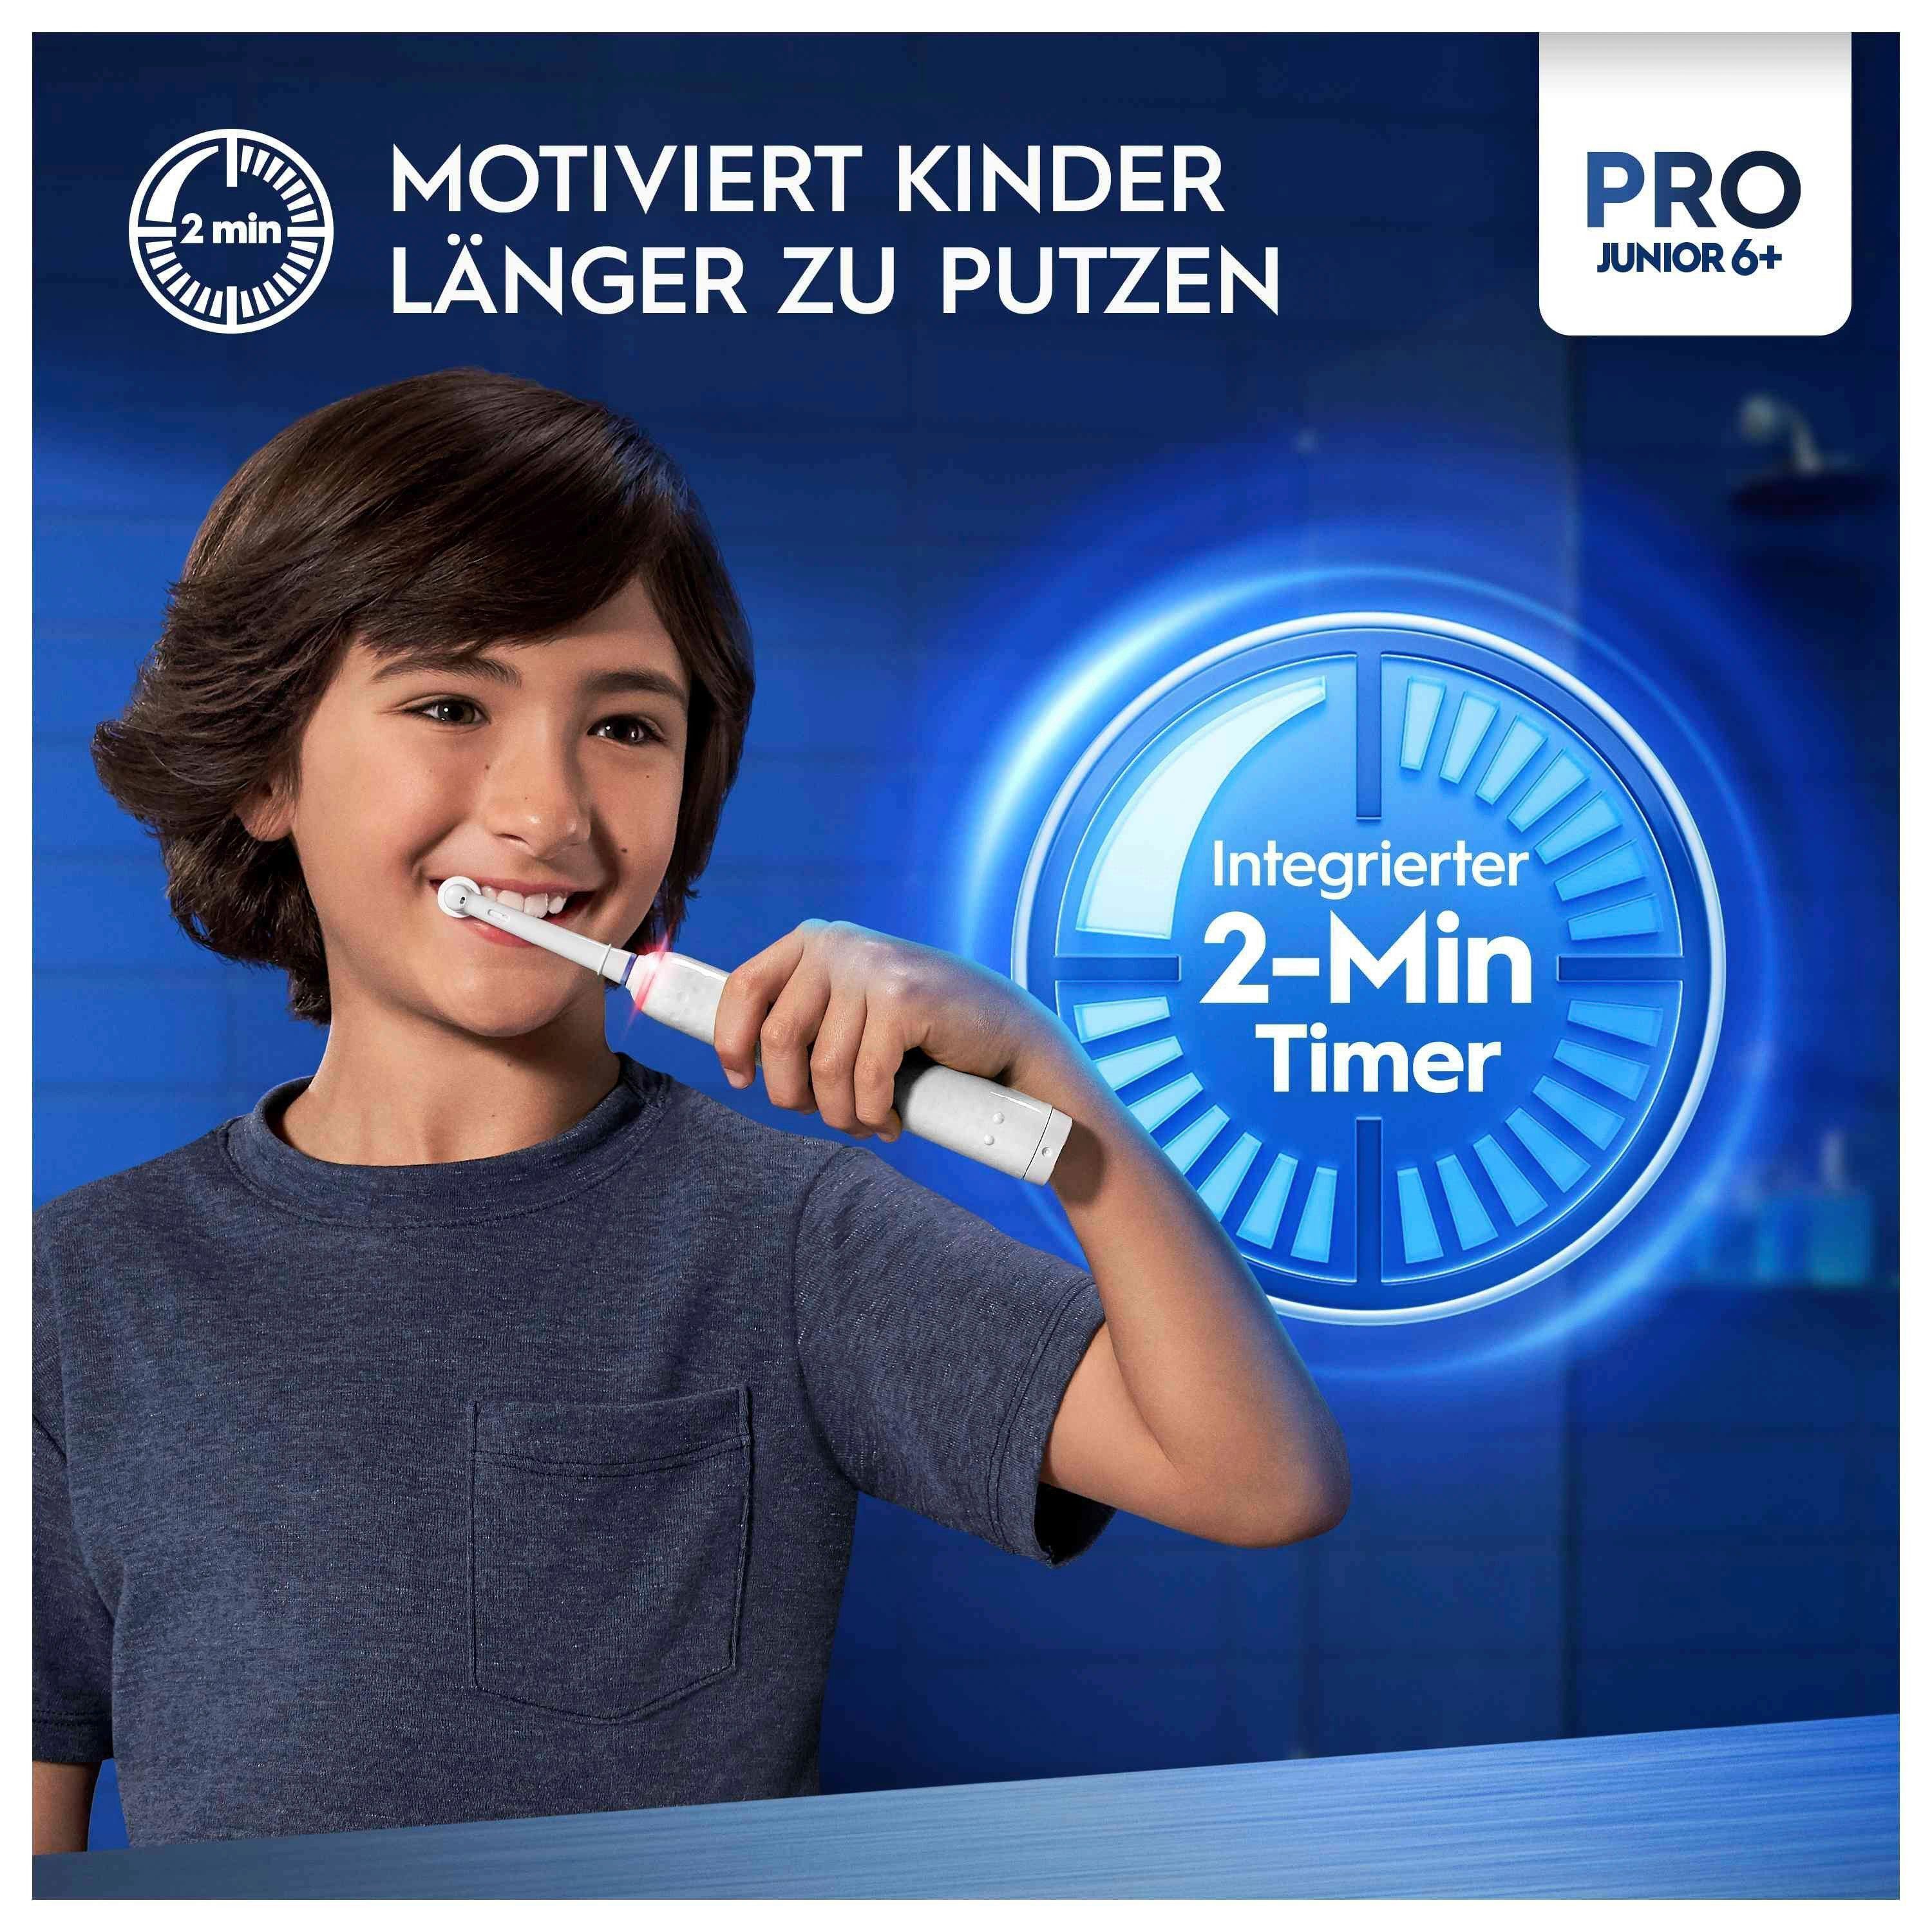 putzen Elektrische Zahnbürste Drucksensor, Oral-B zu St., Timer Der integrierte Junior, 2-Minuten Pro motiviert Aufsteckbürsten: Kinder länger 2